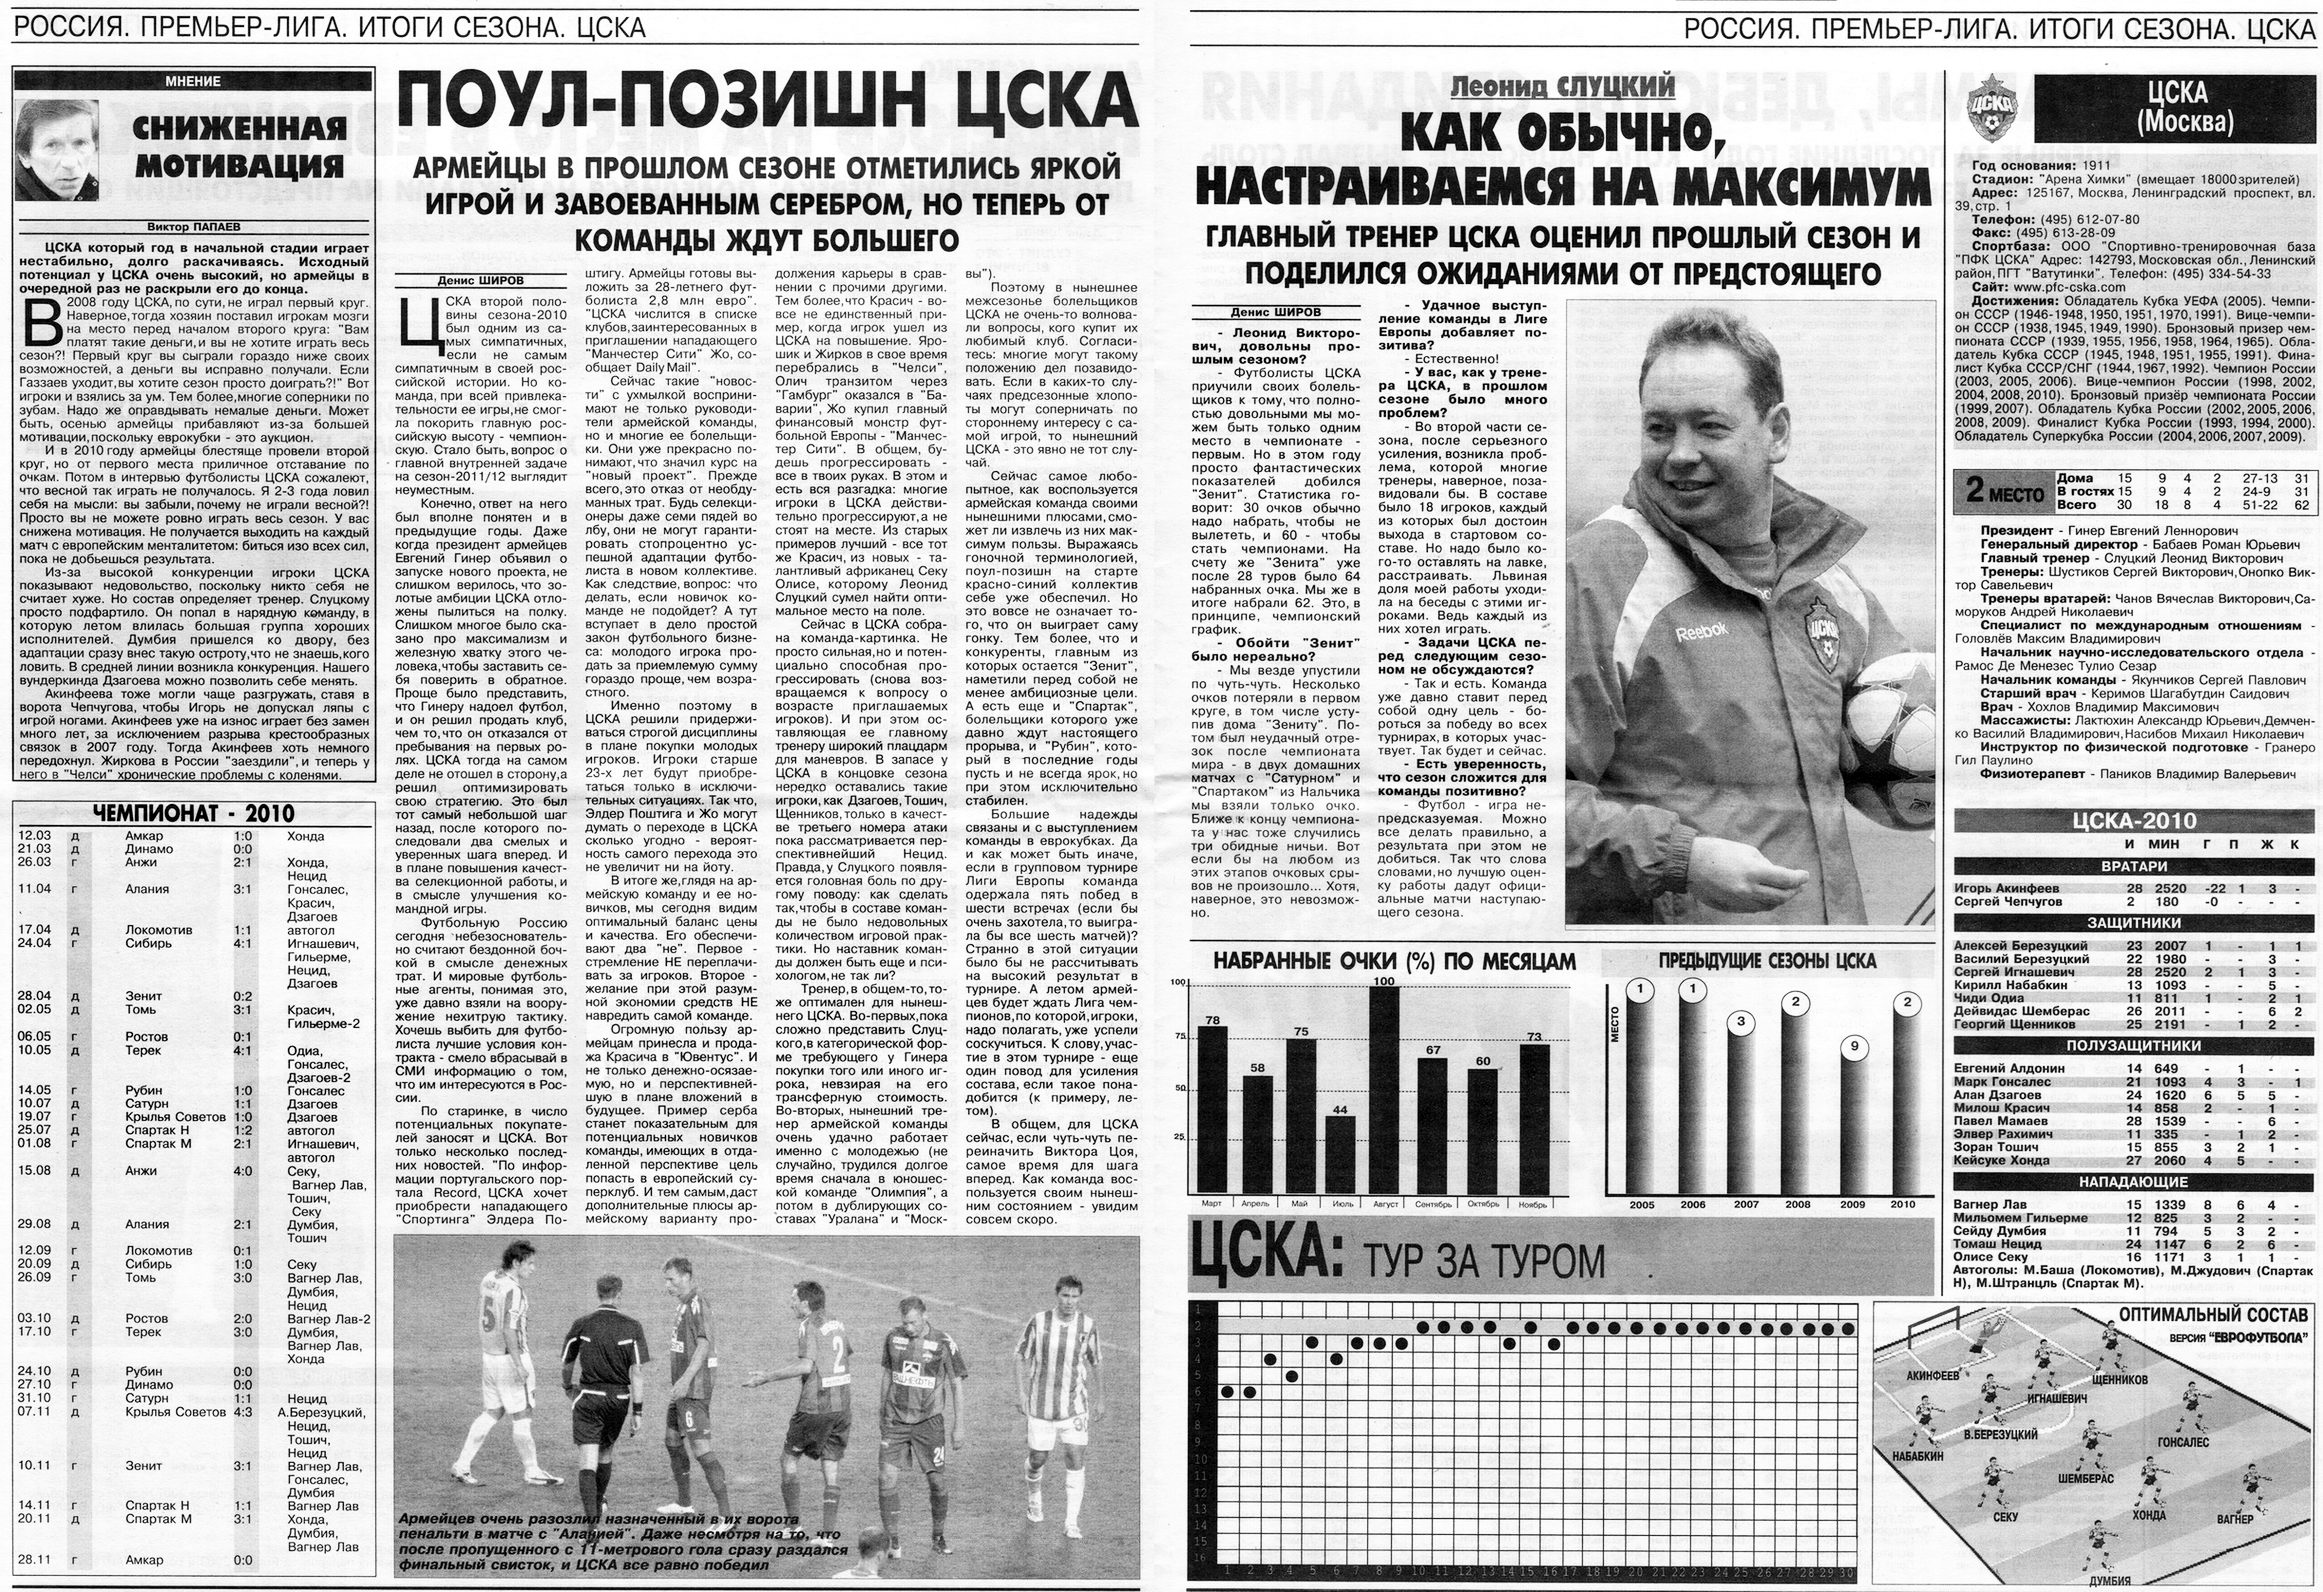 2010.CSKA